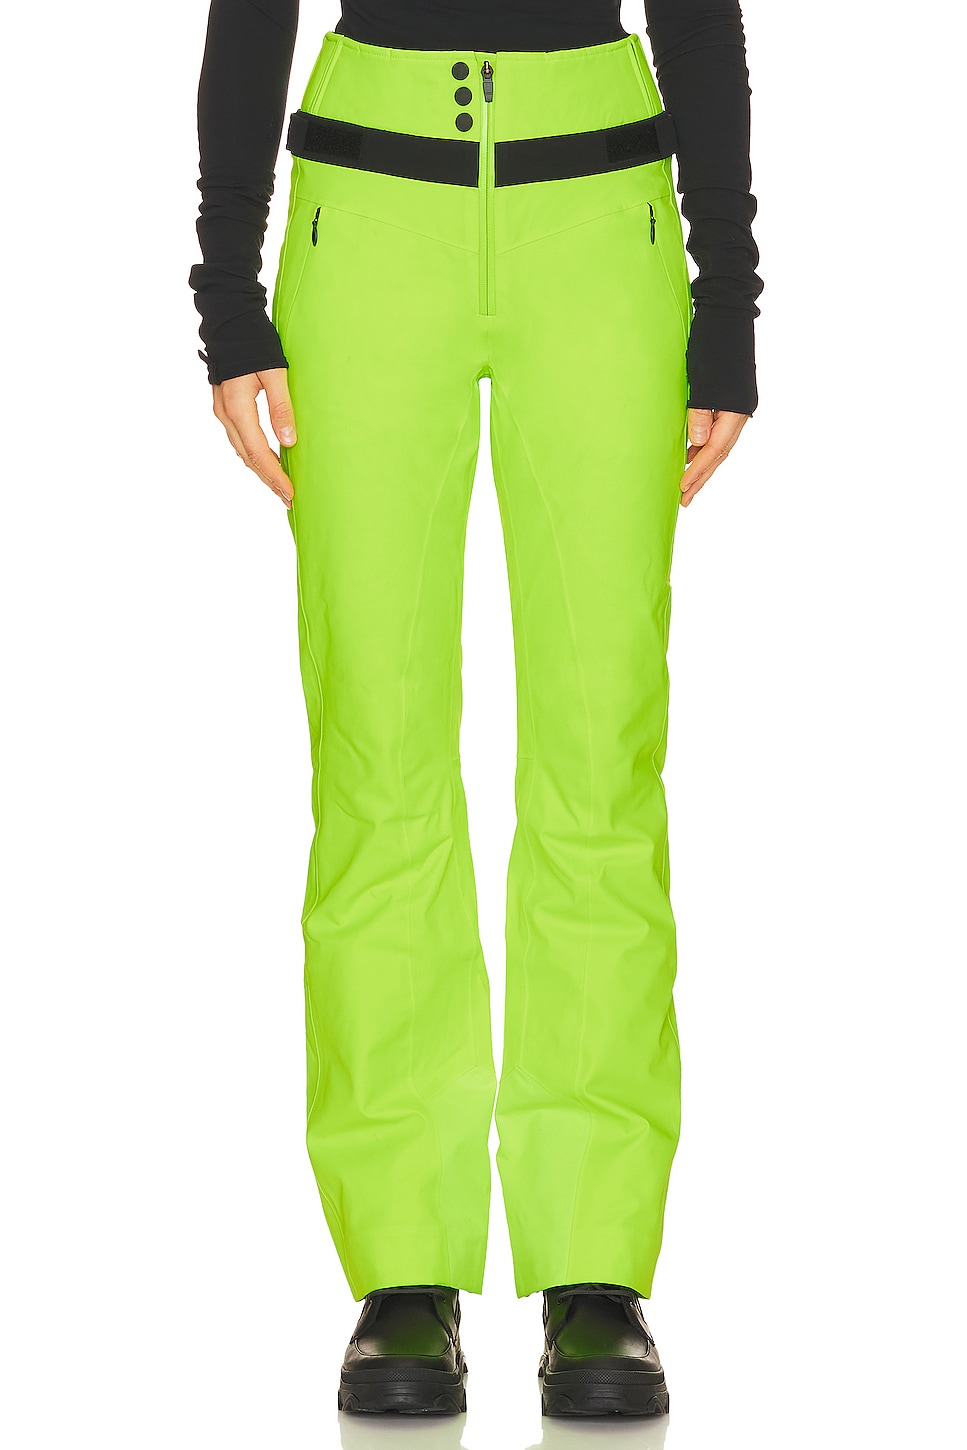 Лыжные брюки Fire + Ice Borja Ski, зеленый цена и фото